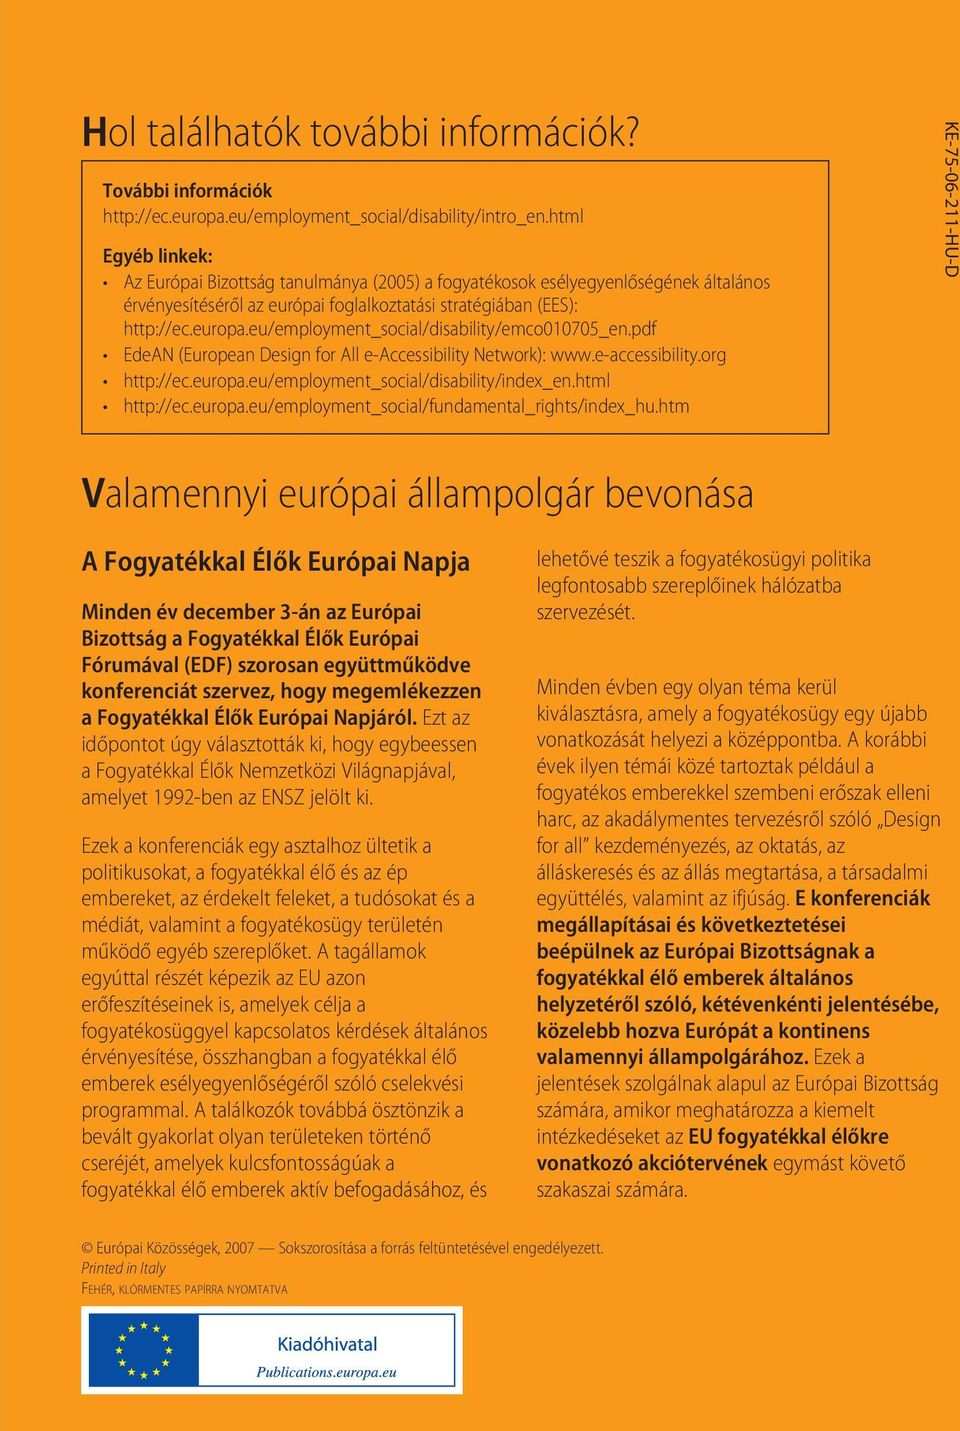 eu/employment_social/disability/emco010705_en.pdf EdeAN (European Design for All e-accessibility Network): www.e-accessibility.org http://ec.europa.eu/employment_social/disability/index_en.